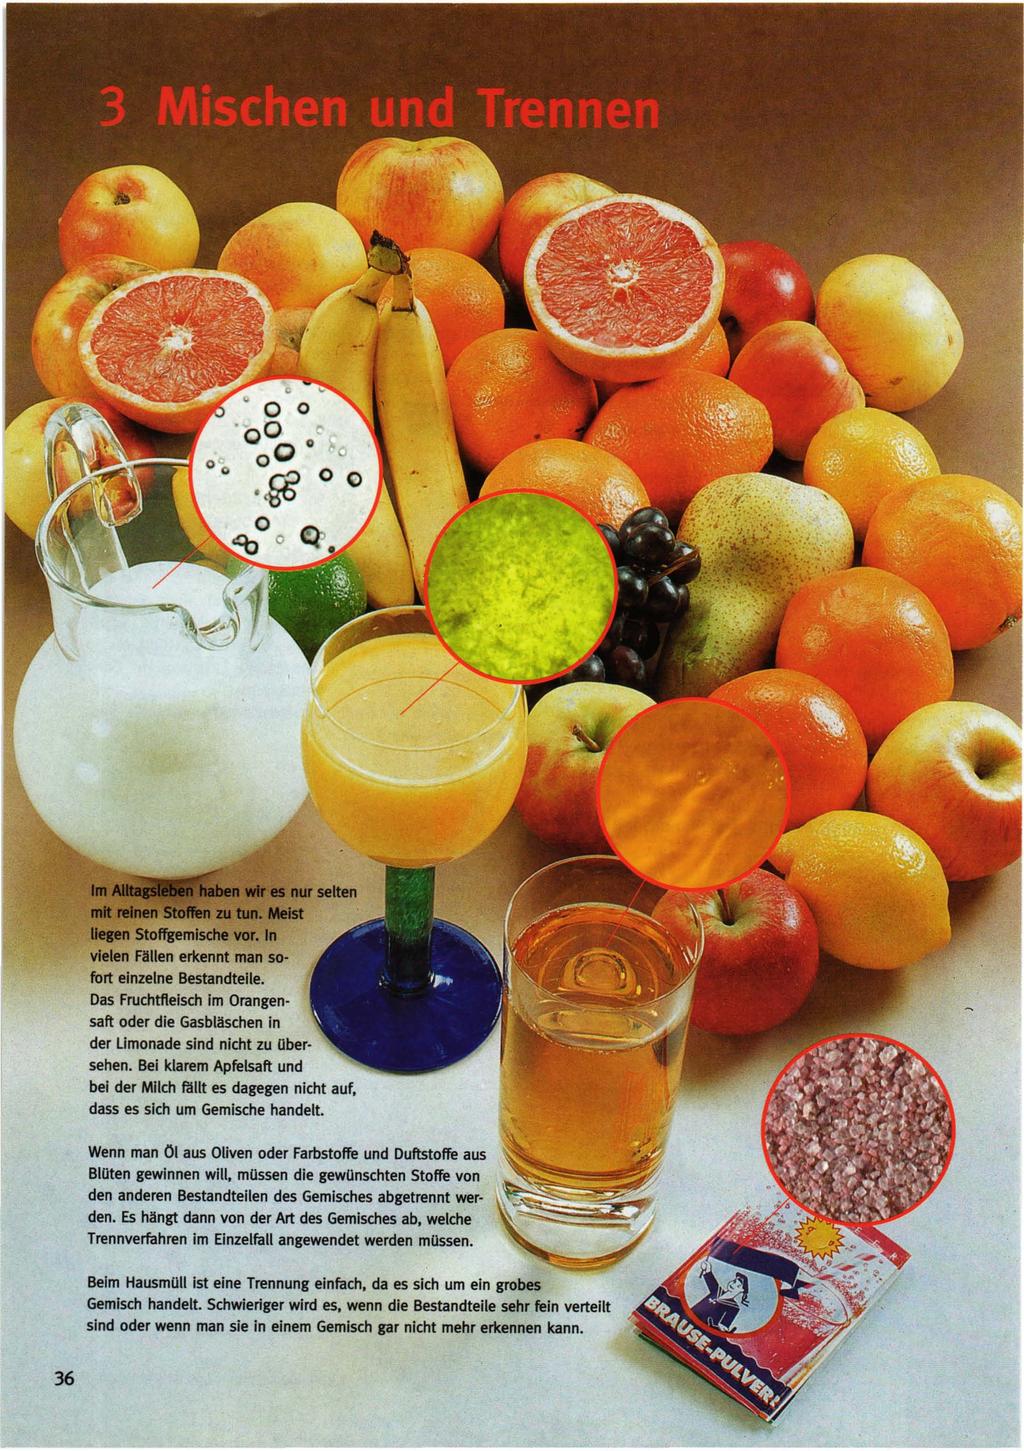 fort einzelne Bestandteile. Das Fruchtfleisch im Orangensaft oder die Gasbläschen in der limonade sind nicht zu Ubersehen.